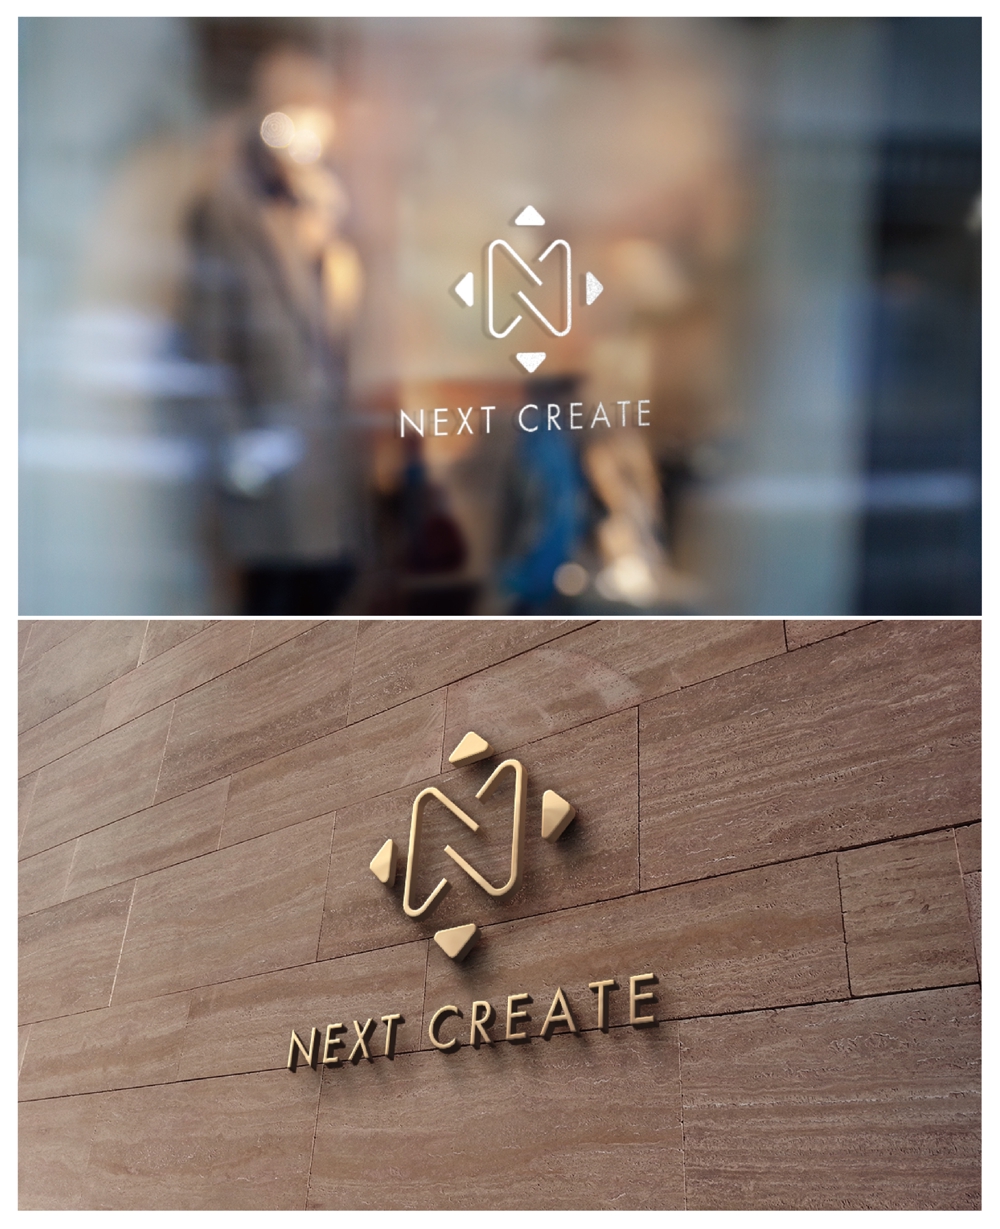 株式会社ネクストクリエイトのロゴとパーソナルトレーニングジム「BODY CREATE」のロゴ